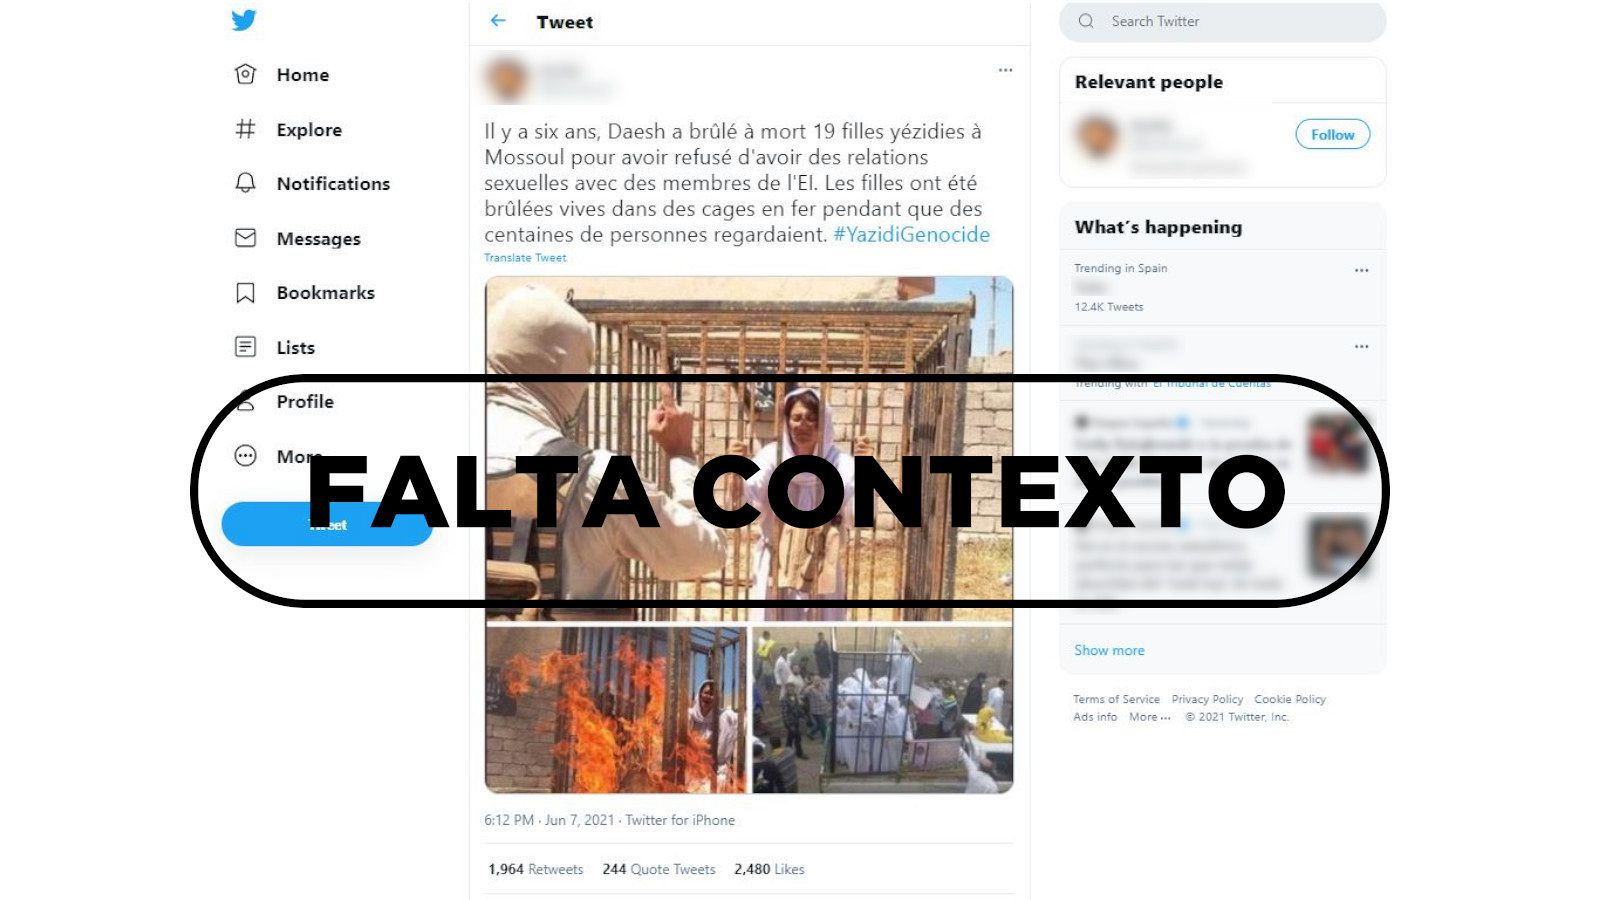 Este tuit con tres fotos de mujeres ardiendo en jaulas son una "performance", con sello de Falta Contexto.